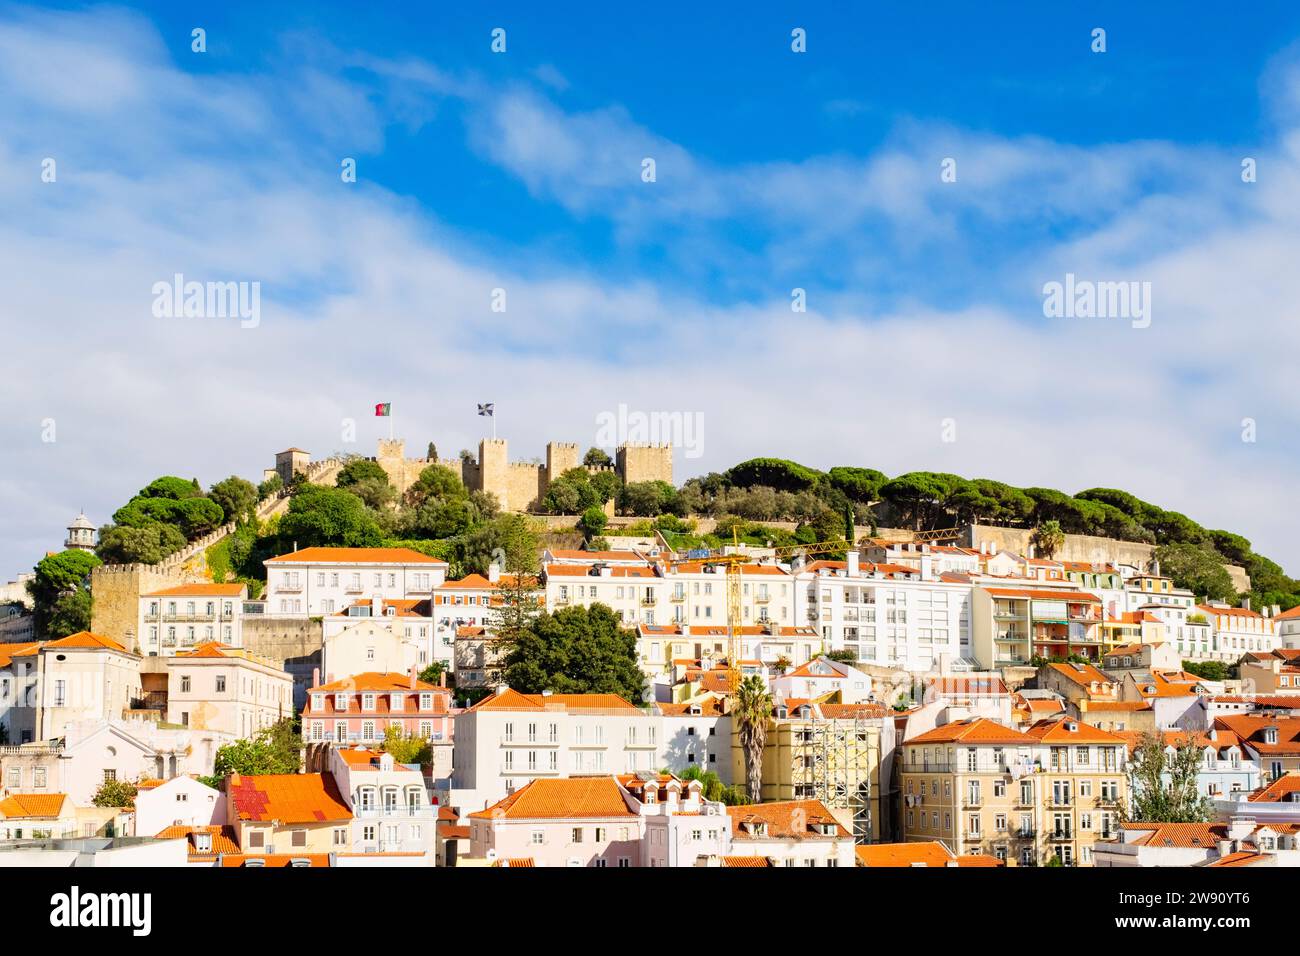 Vista sui tetti rossi delle vecchie case verso il castello di Sao Jorge sulla cima della collina. Lisbona, Portogallo, Europa. Foto Stock